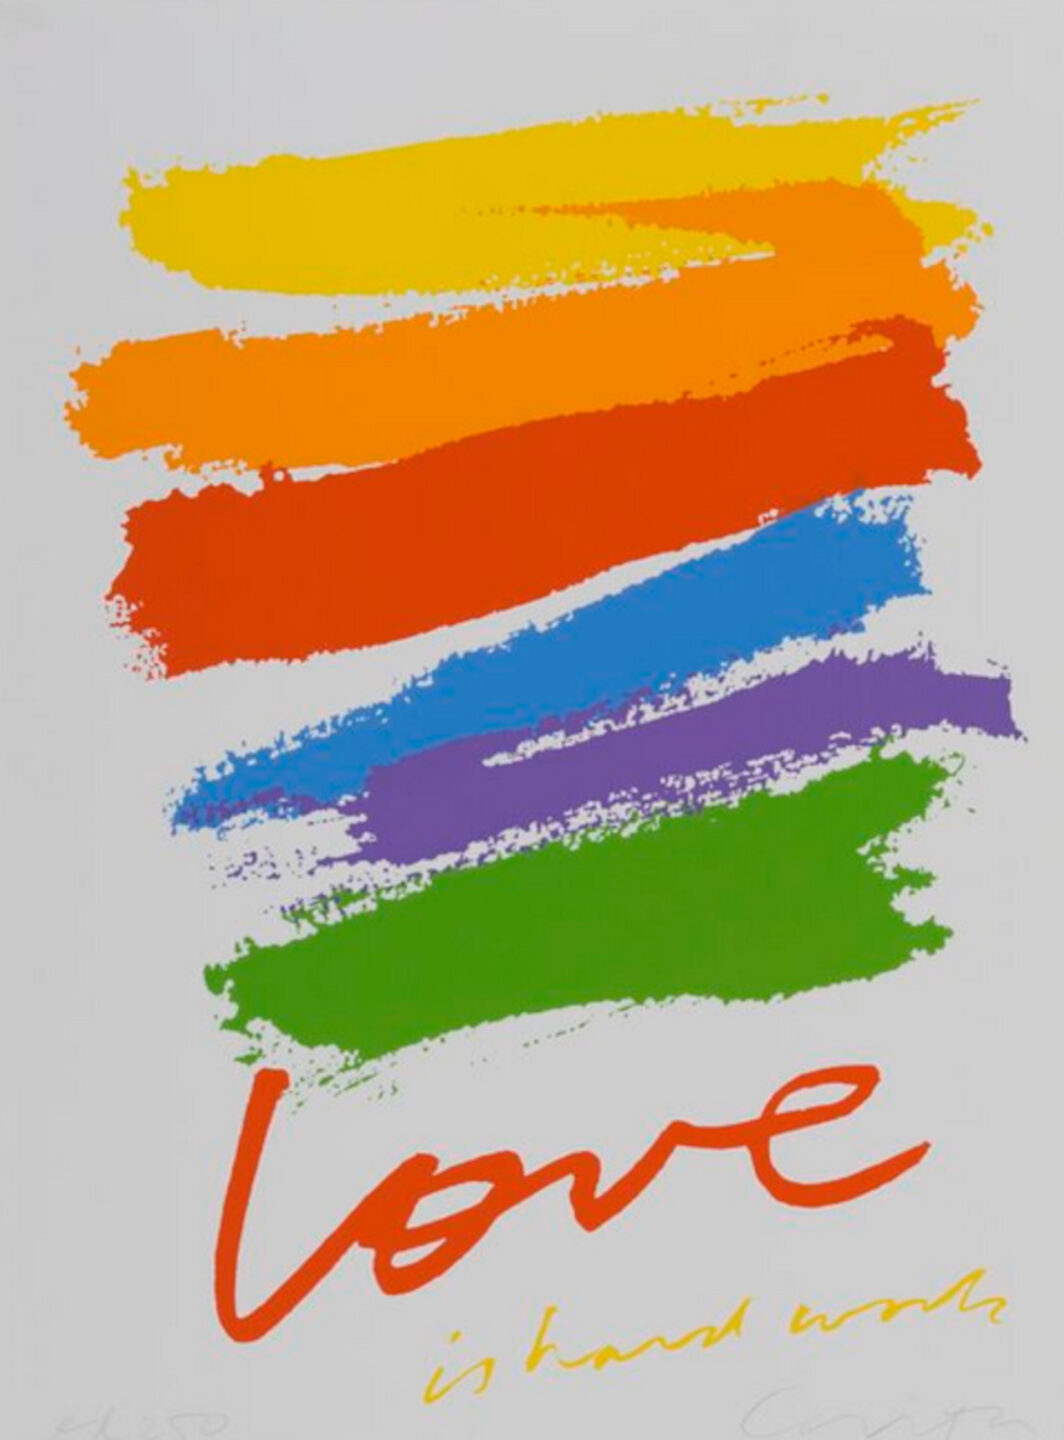 Der Entwurf von Corita Kent zur US-"Love"-Briefmarke